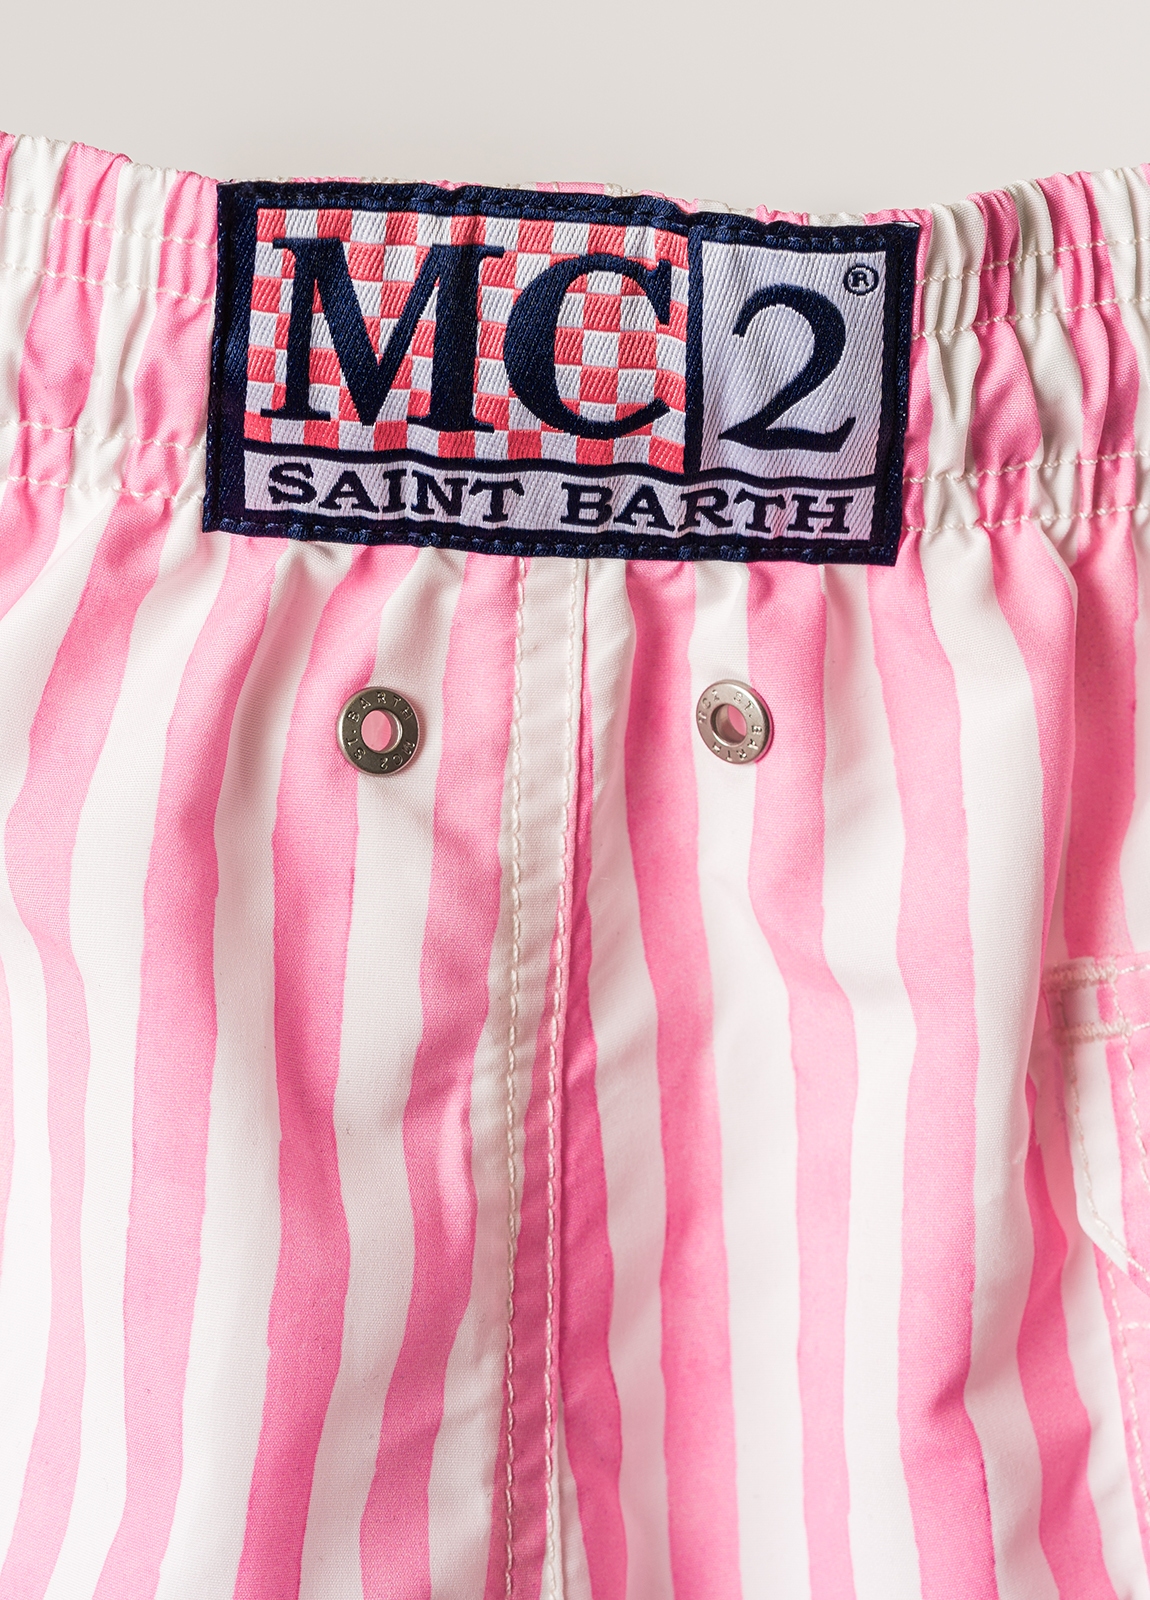 Bañador MC2 Saint barth rayas, color rosa - Ítem6